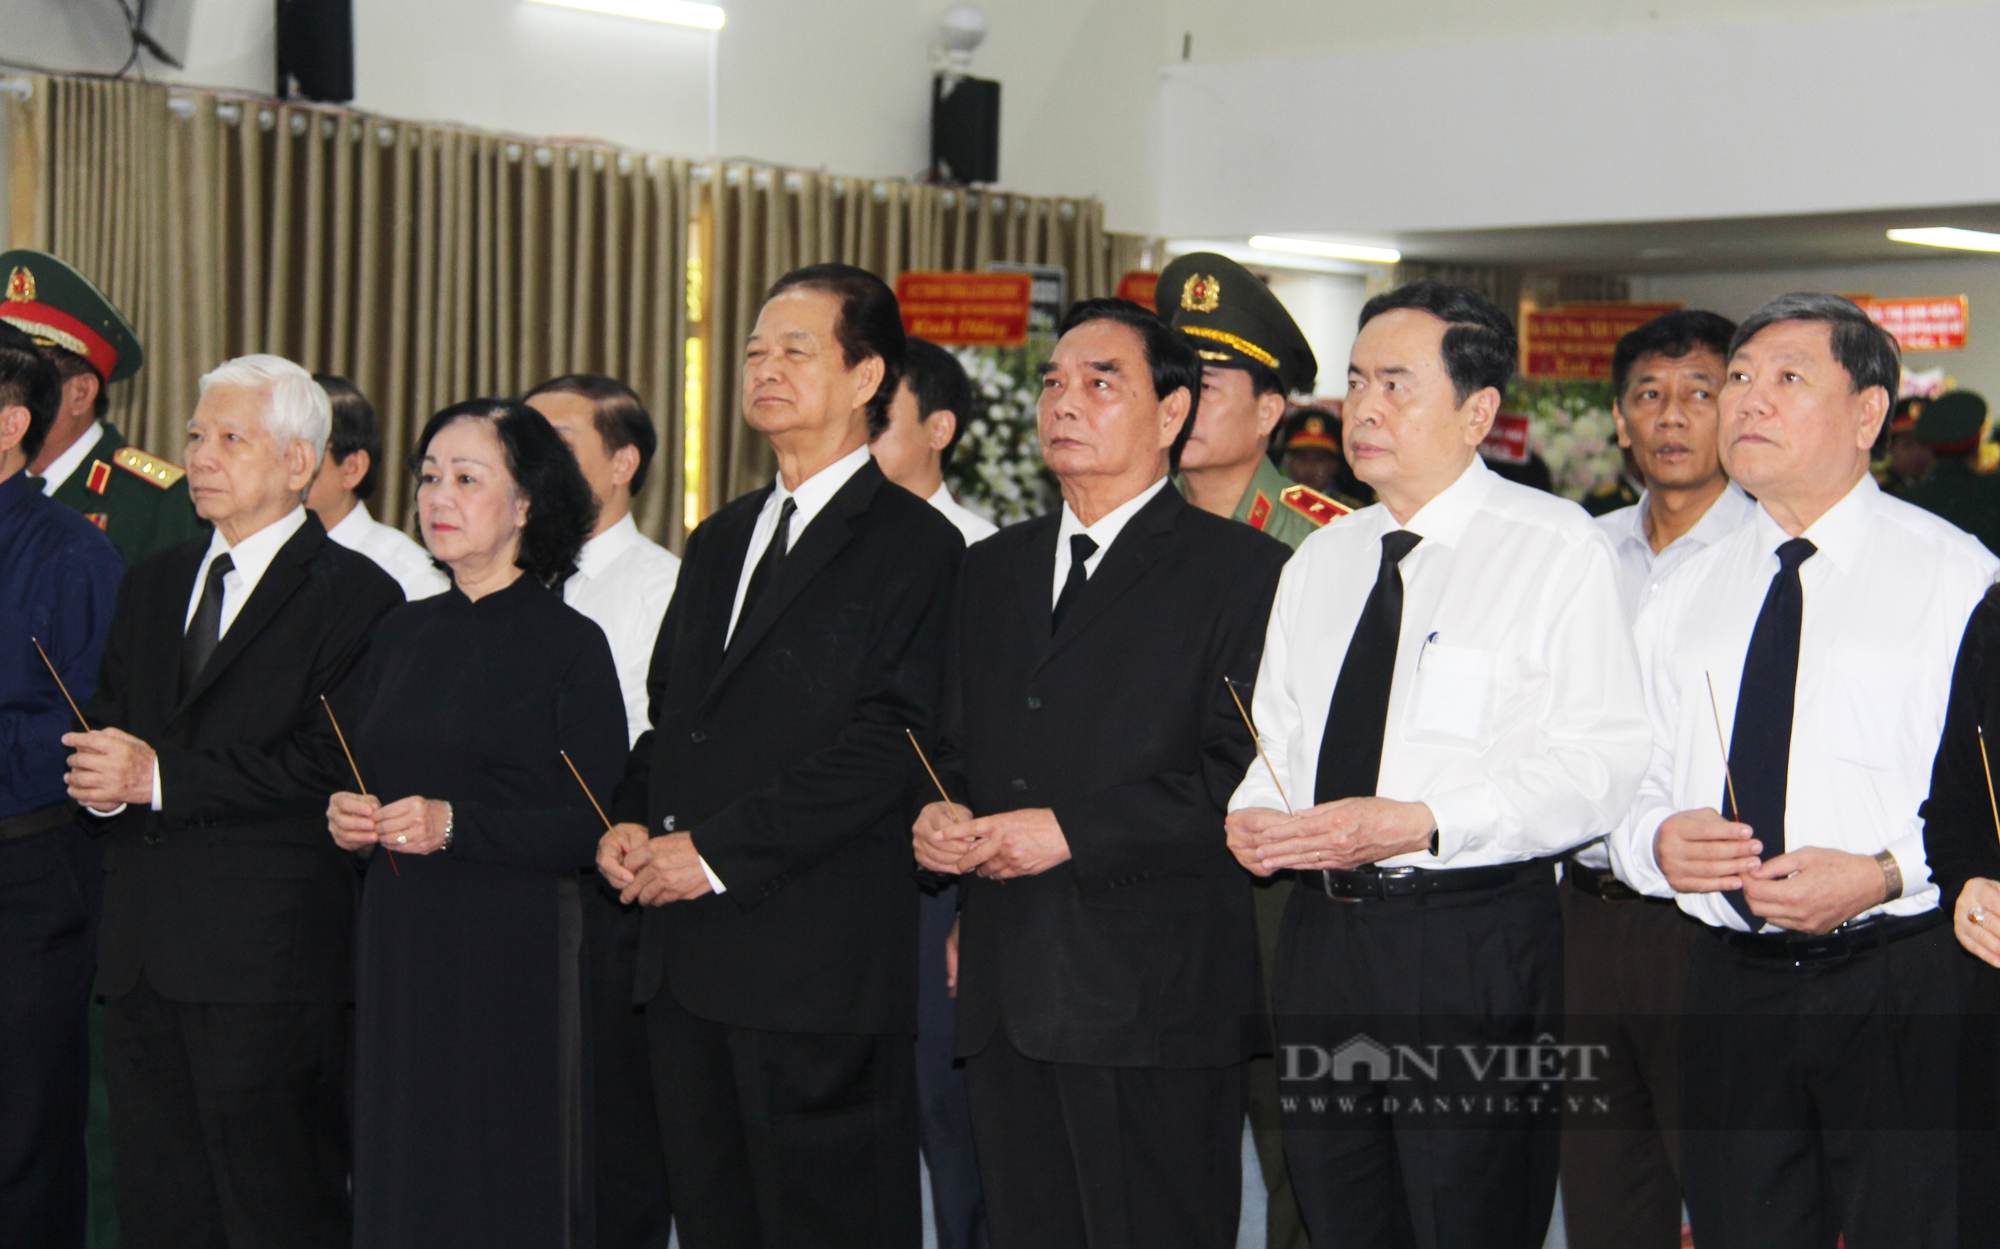 Đang diễn ra tang lễ nguyên Trưởng Ban Tổ chức T.Ư Lê Phước Thọ - Ảnh 3.